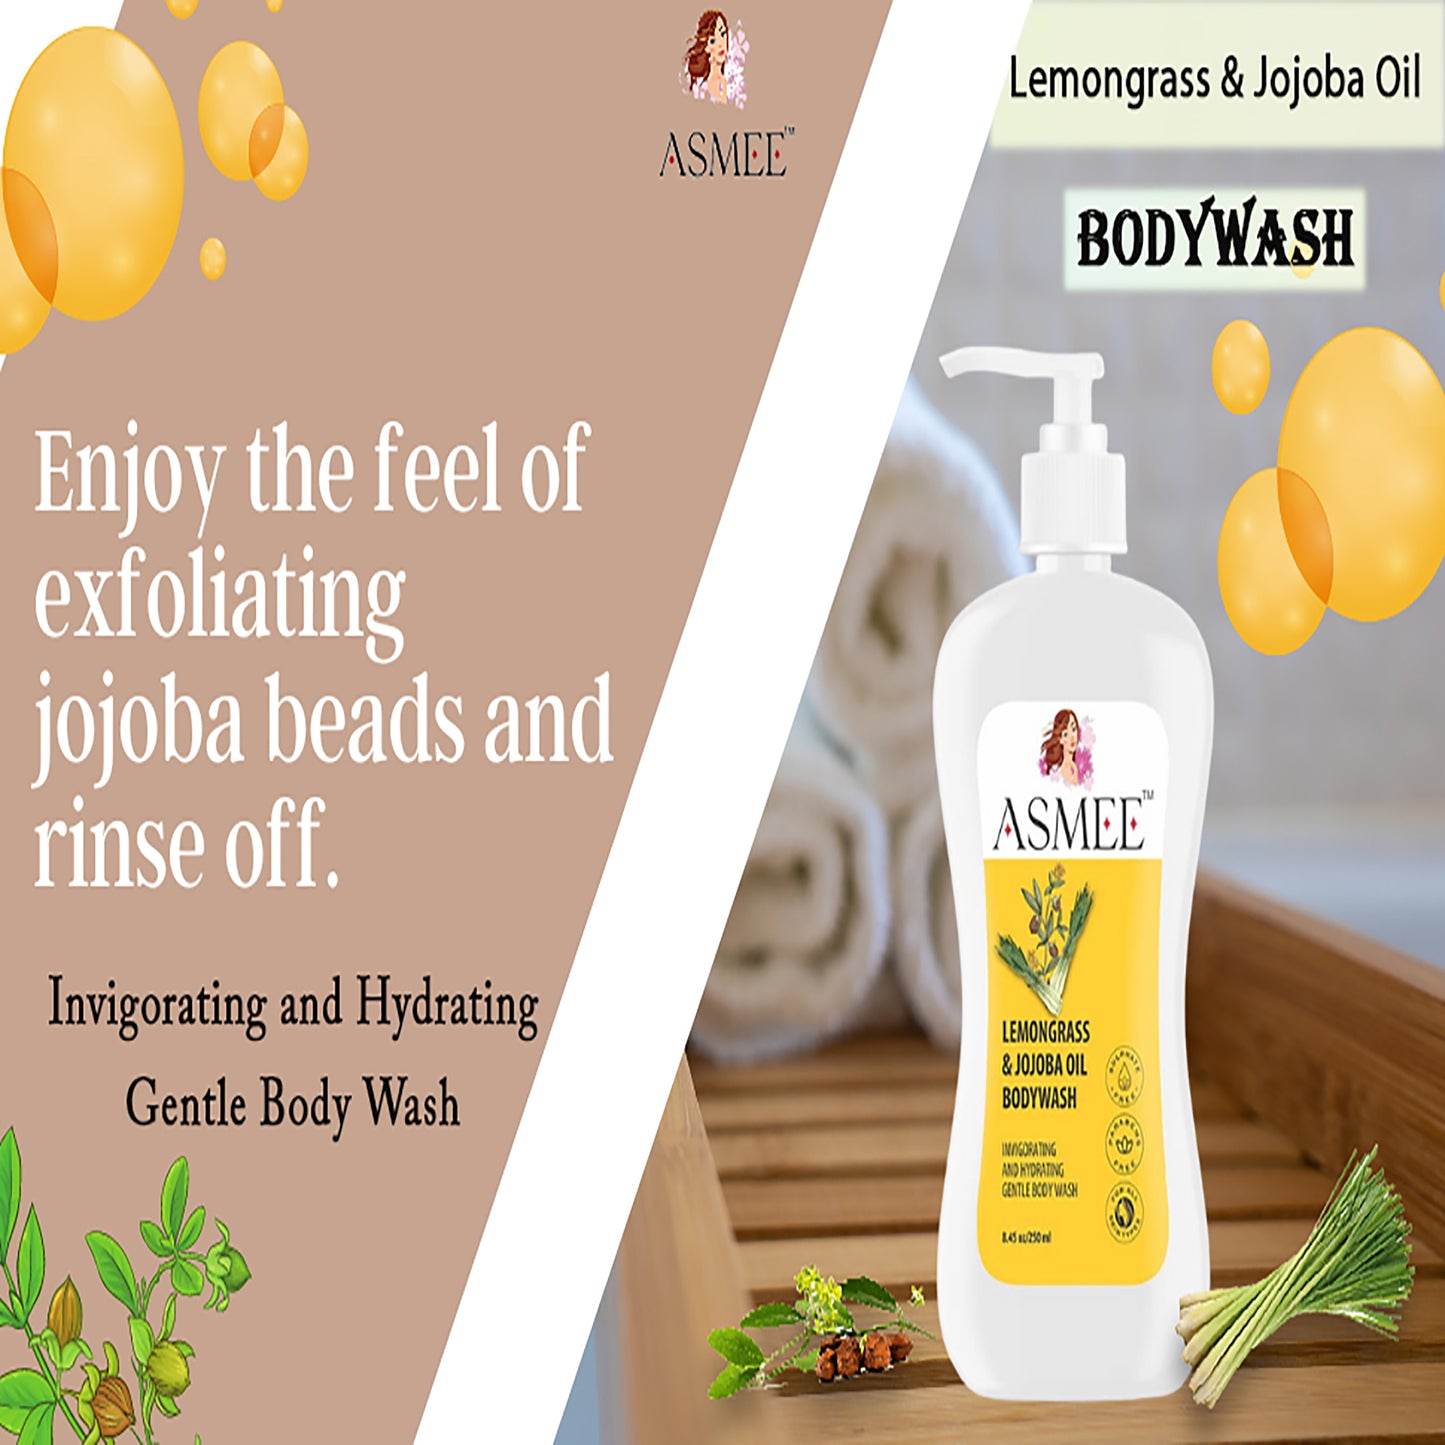 Lemongrass & Jojoba oil Bodywash